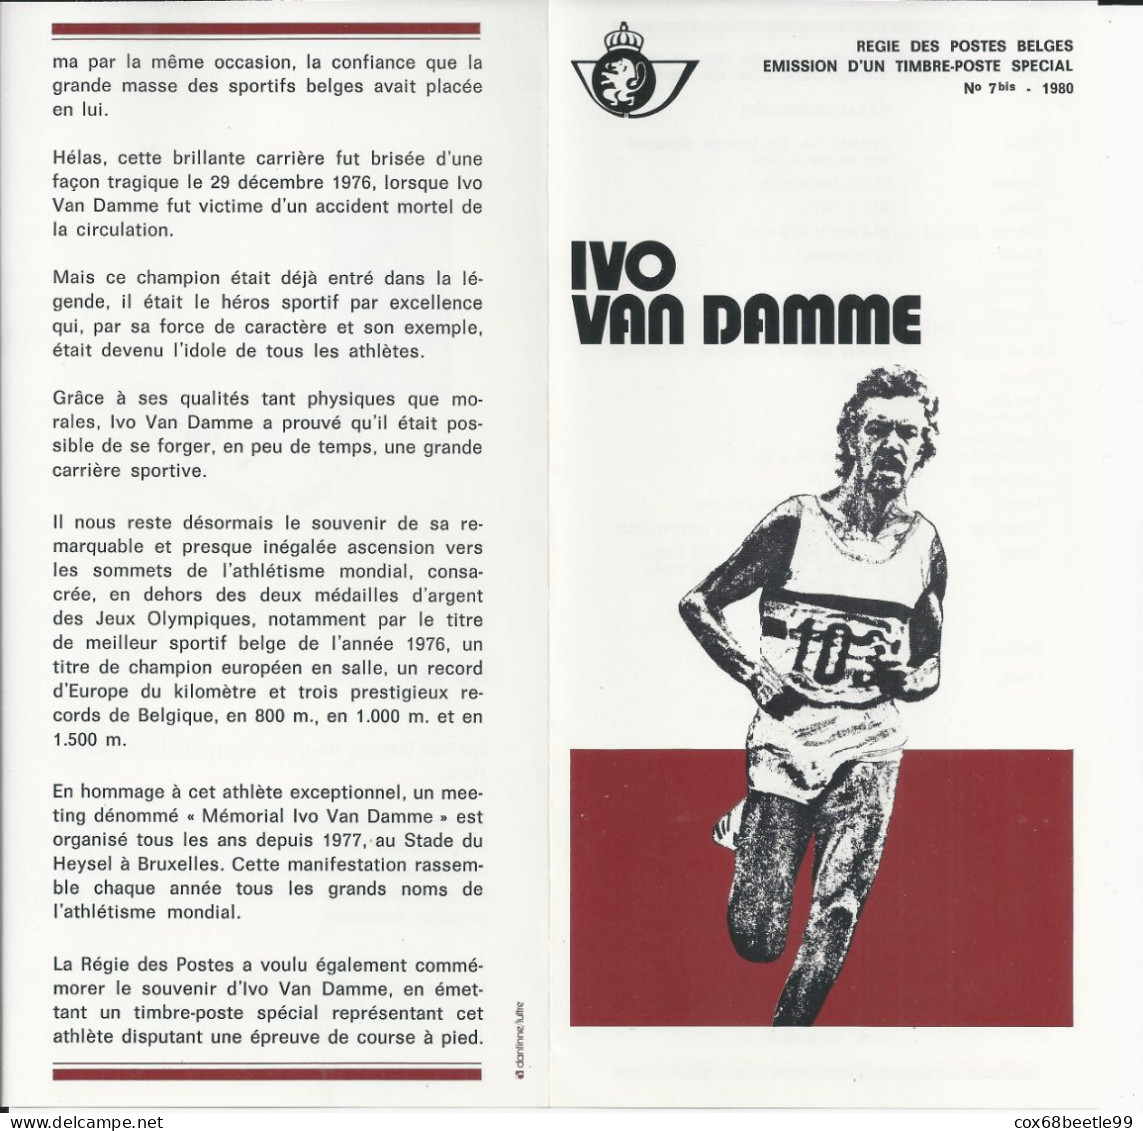 IVO VAN DAMME Belgique Feuillet De La Poste 1980 - 7 Bis FDC Cob 1974 03-05-1980 LIEGE Club Philatélique Le Perron - Dépliants De La Poste